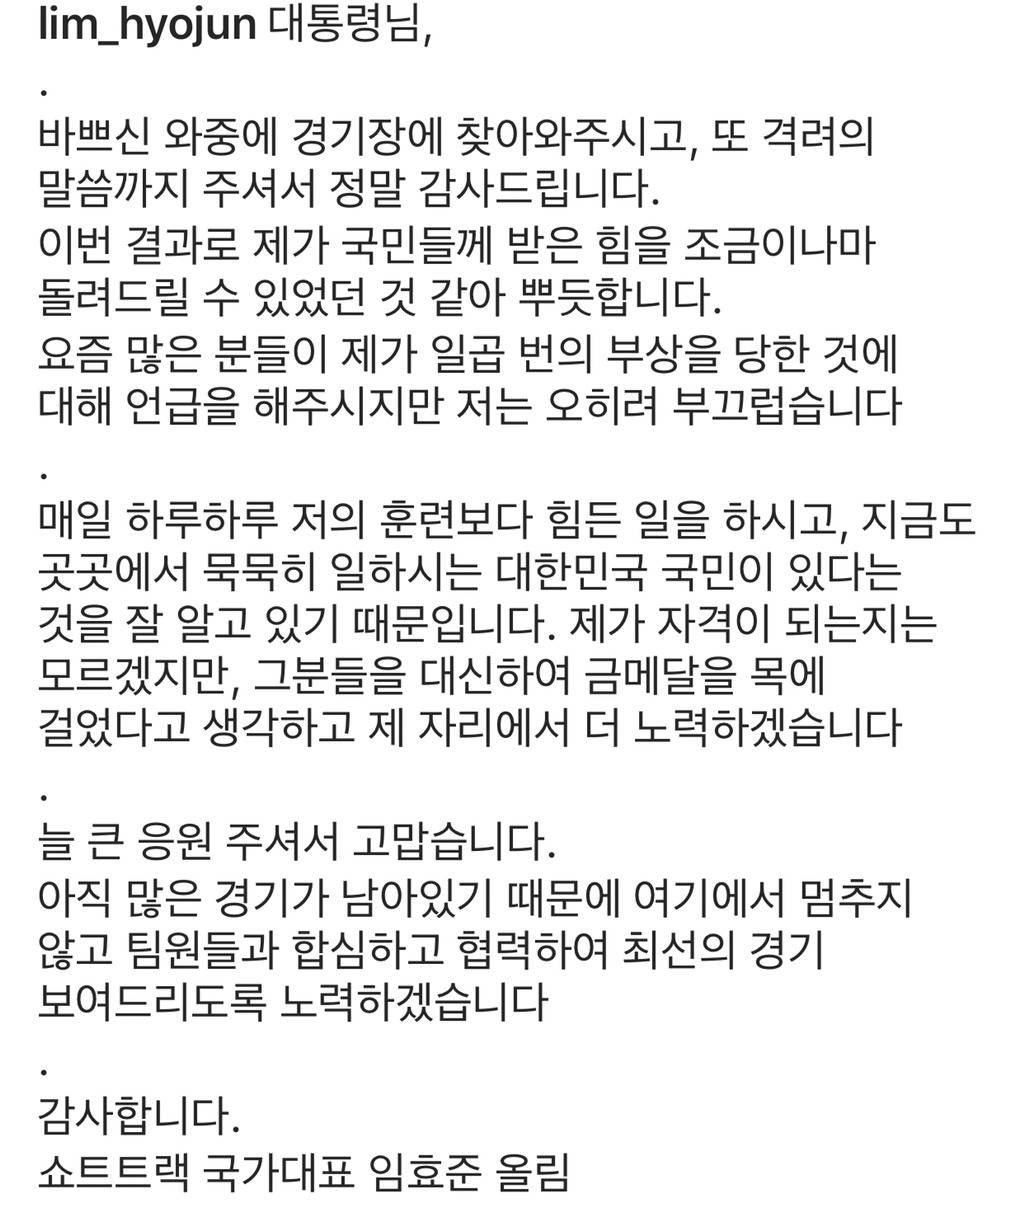 문재인 대통령 축사에 답변한 임효준 선수 | 인스티즈